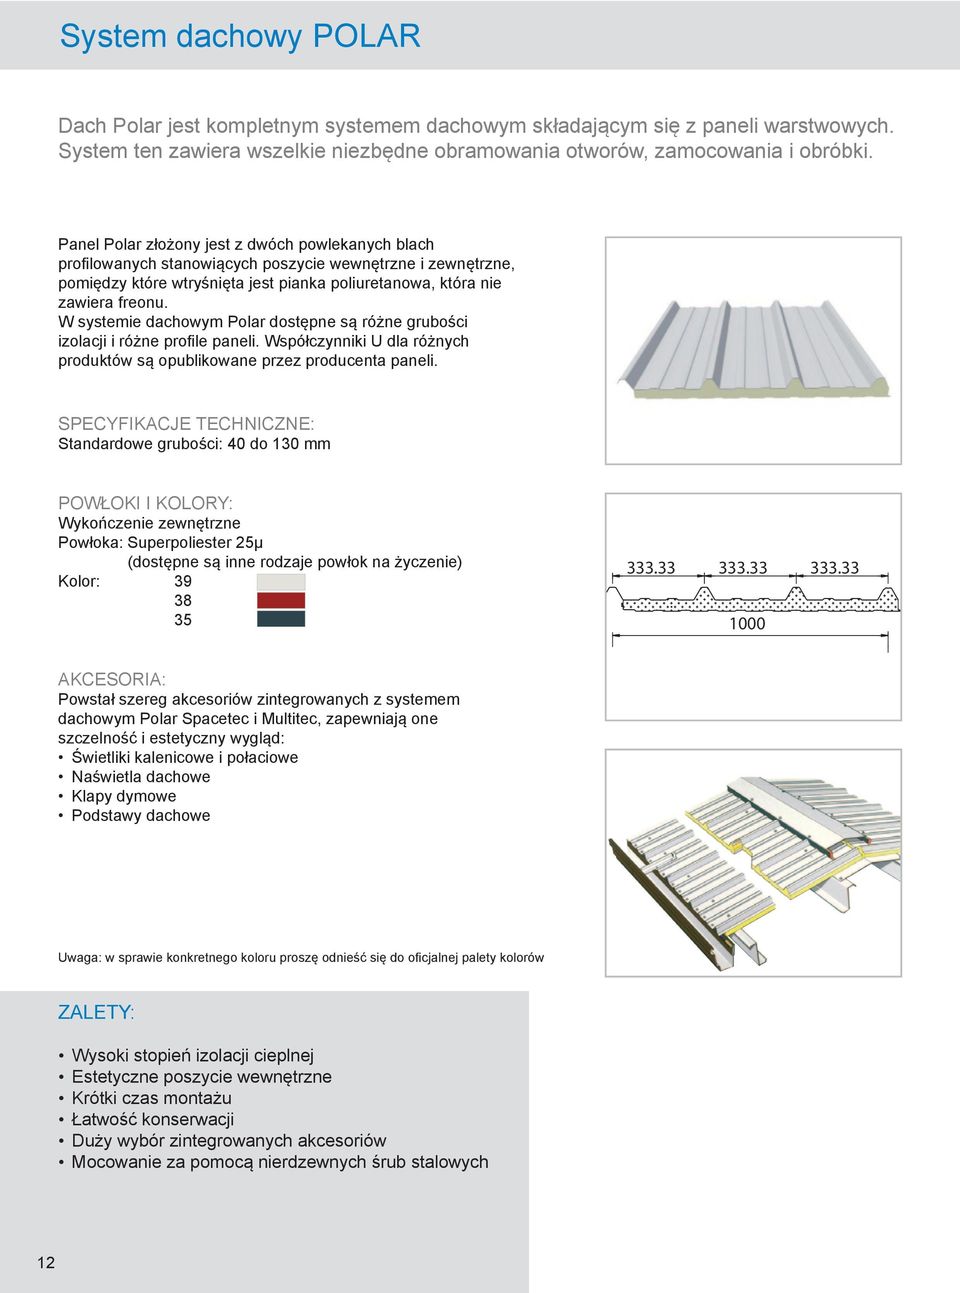 W systemie dachowym Polar dostępne są różne grubości izolacji i różne profile paneli. Współczynniki U dla różnych produktów są opublikowane przez producenta paneli.